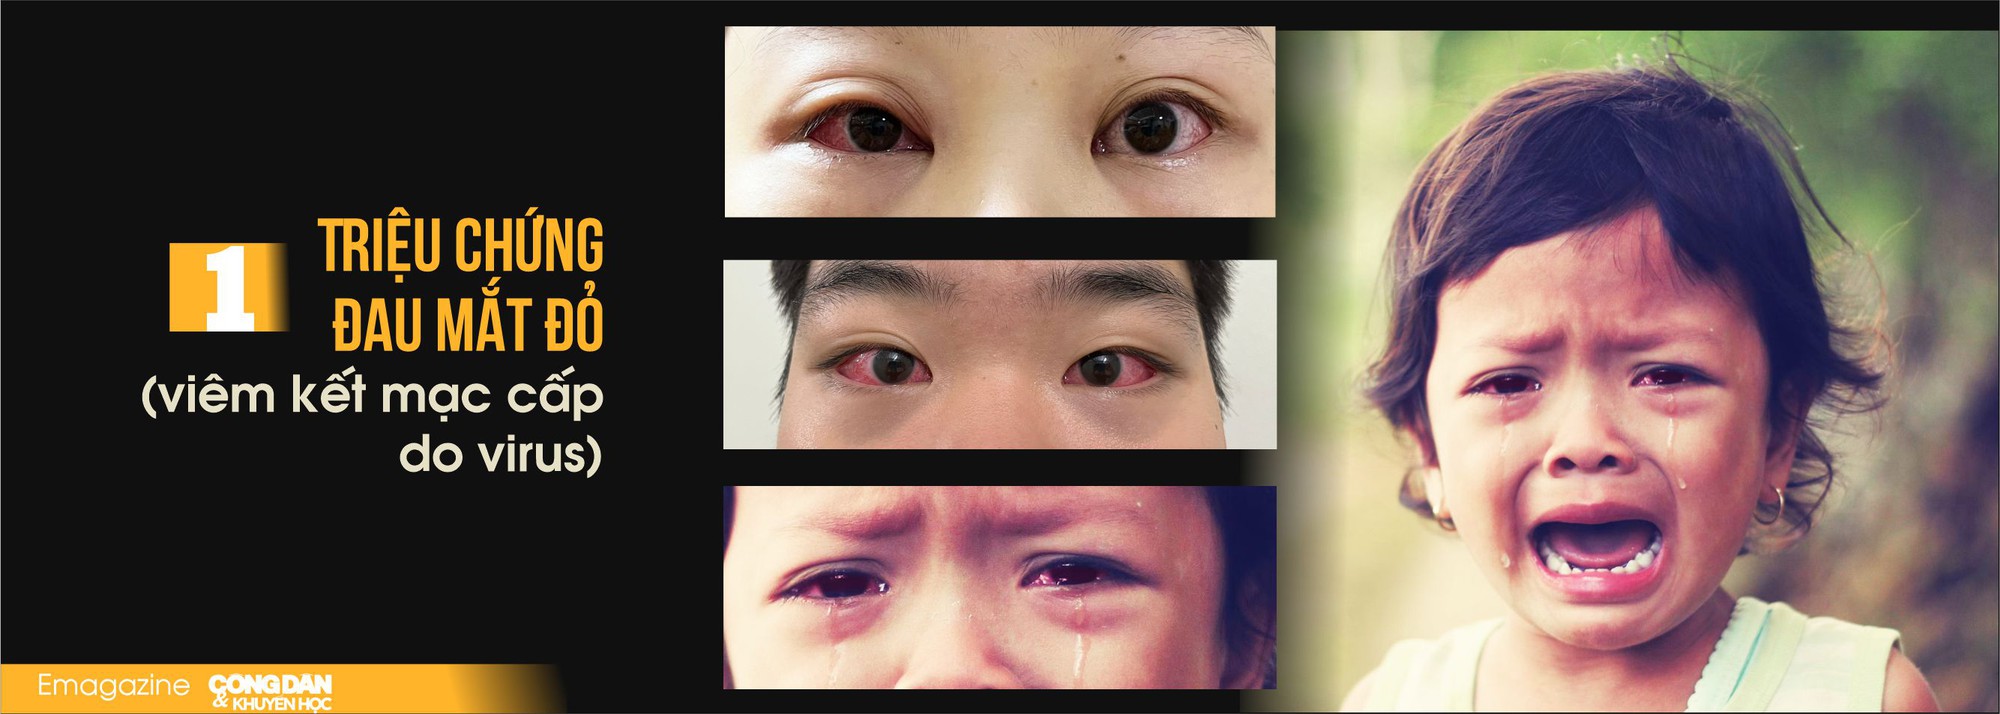 Bệnh đau mắt đỏ đang vào mùa dịch, những điều cần biết và cách phòng bệnh - Ảnh 2.